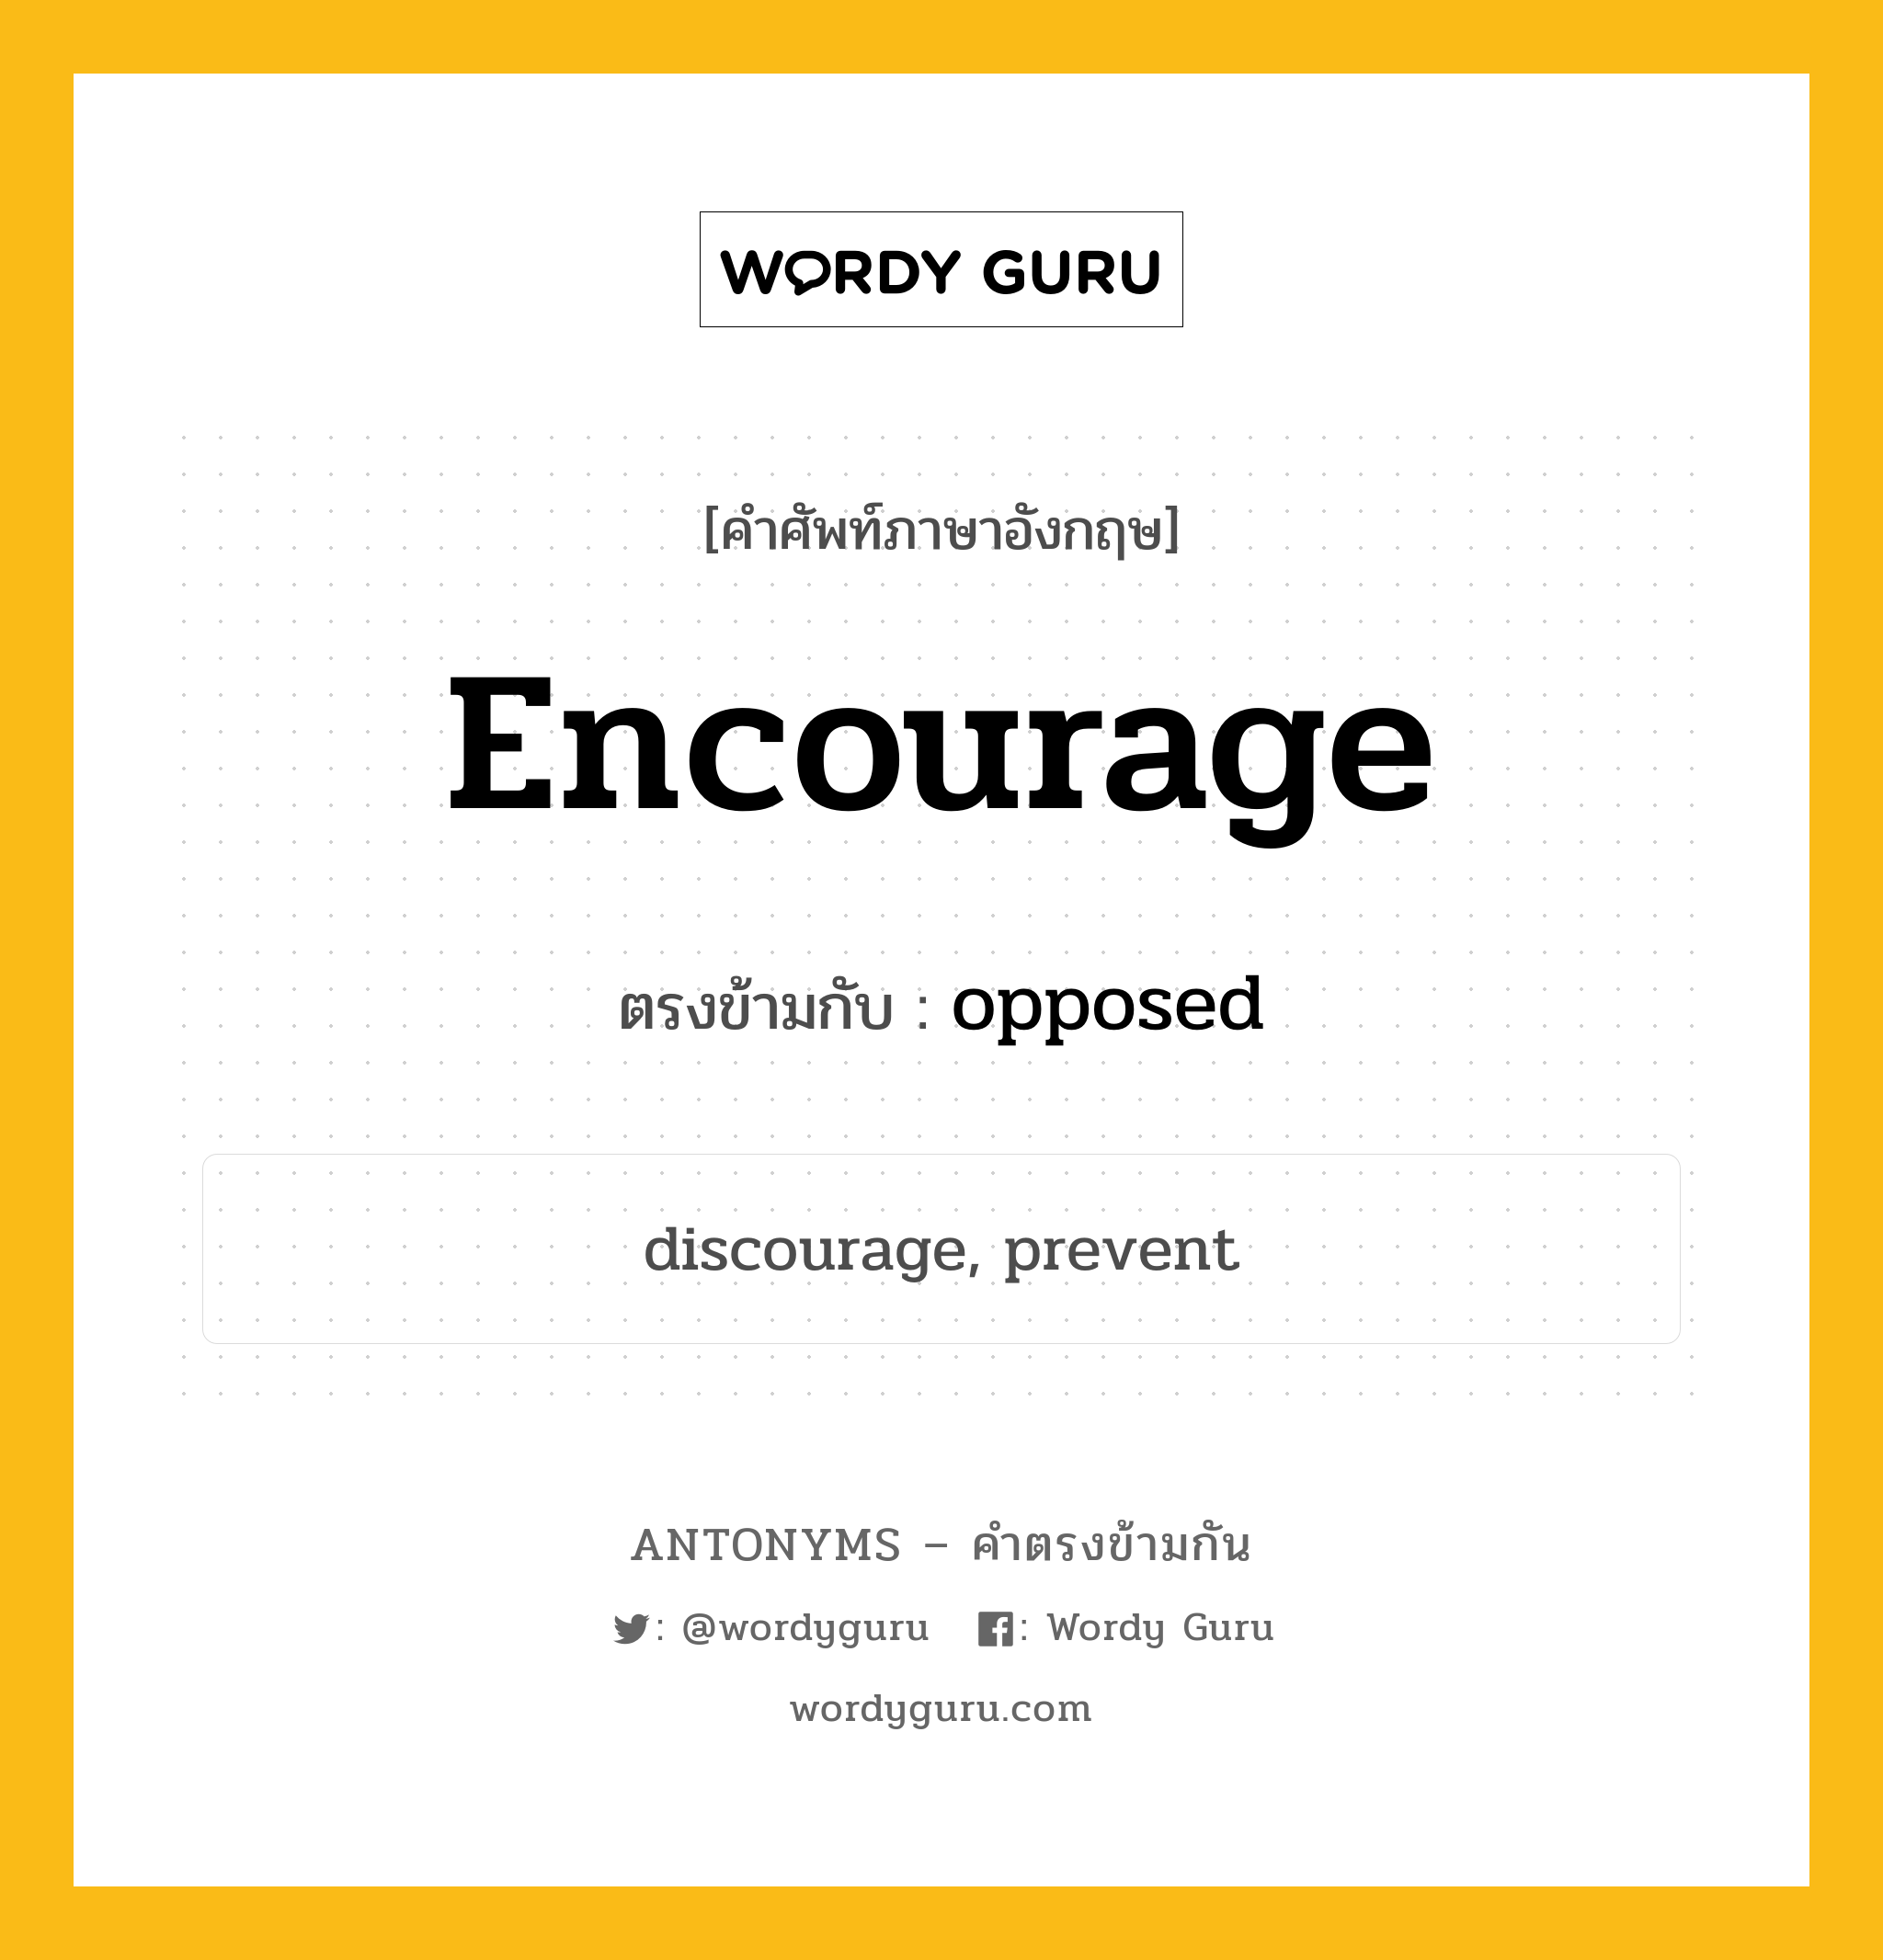 encourage เป็นคำตรงข้ามกับคำไหนบ้าง?, คำศัพท์ภาษาอังกฤษ encourage ตรงข้ามกับ opposed หมวด opposed